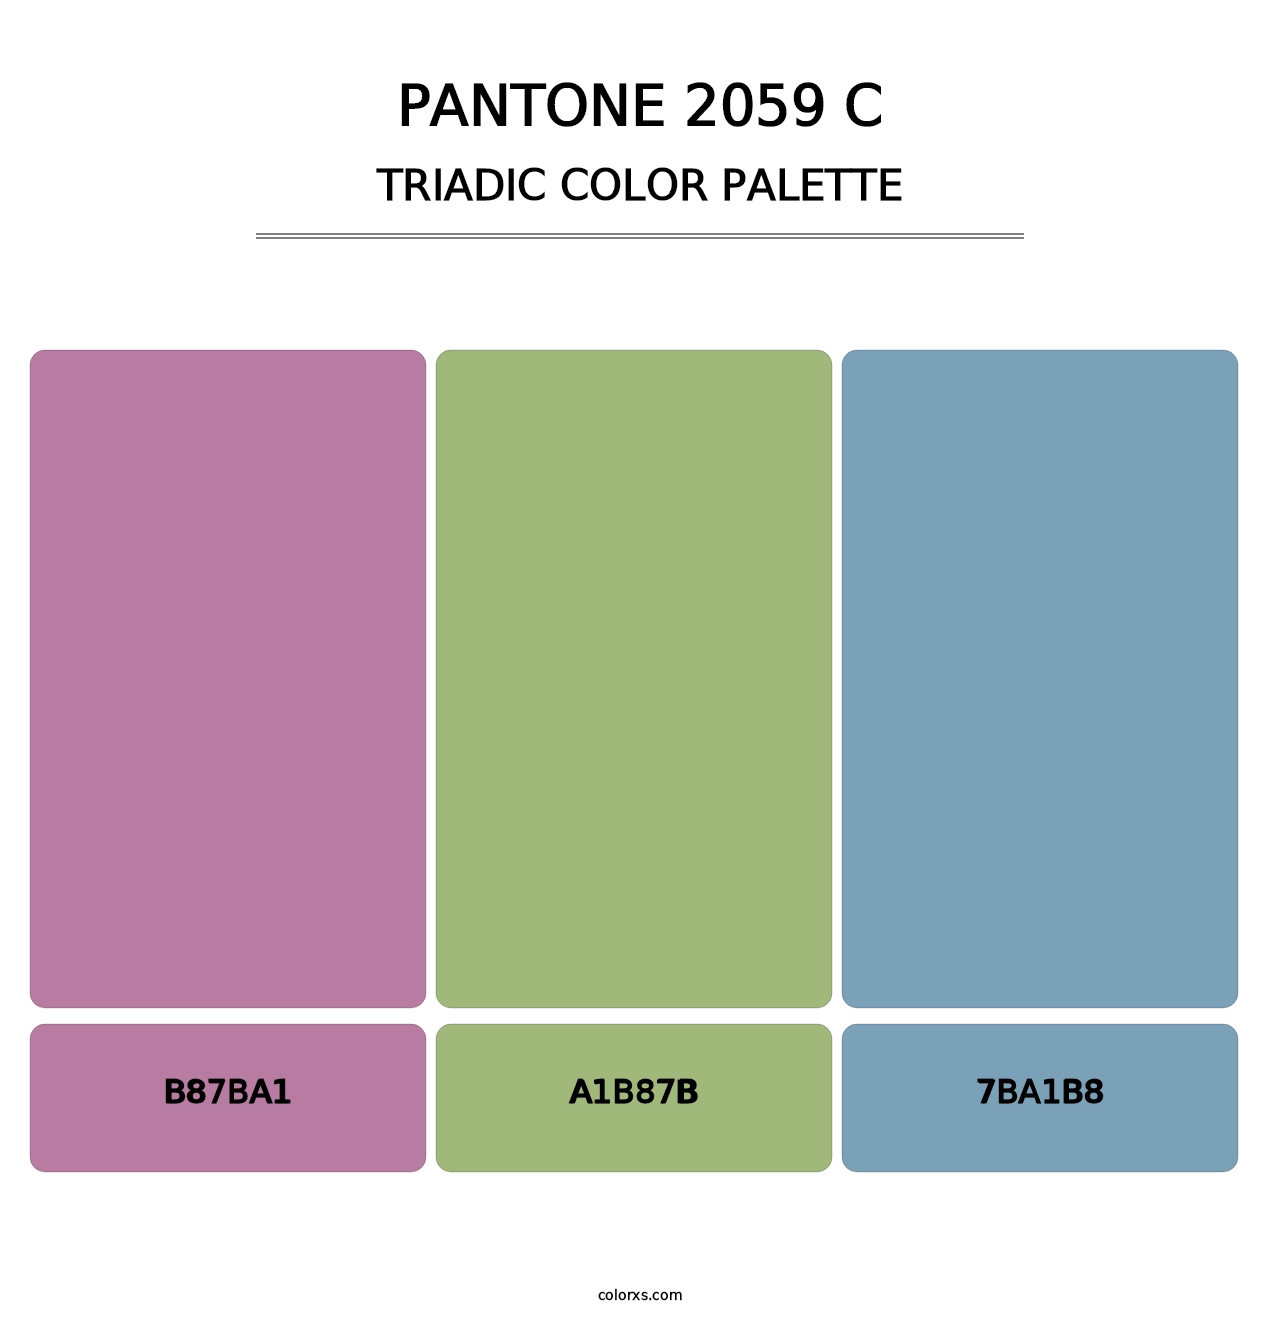 PANTONE 2059 C - Triadic Color Palette